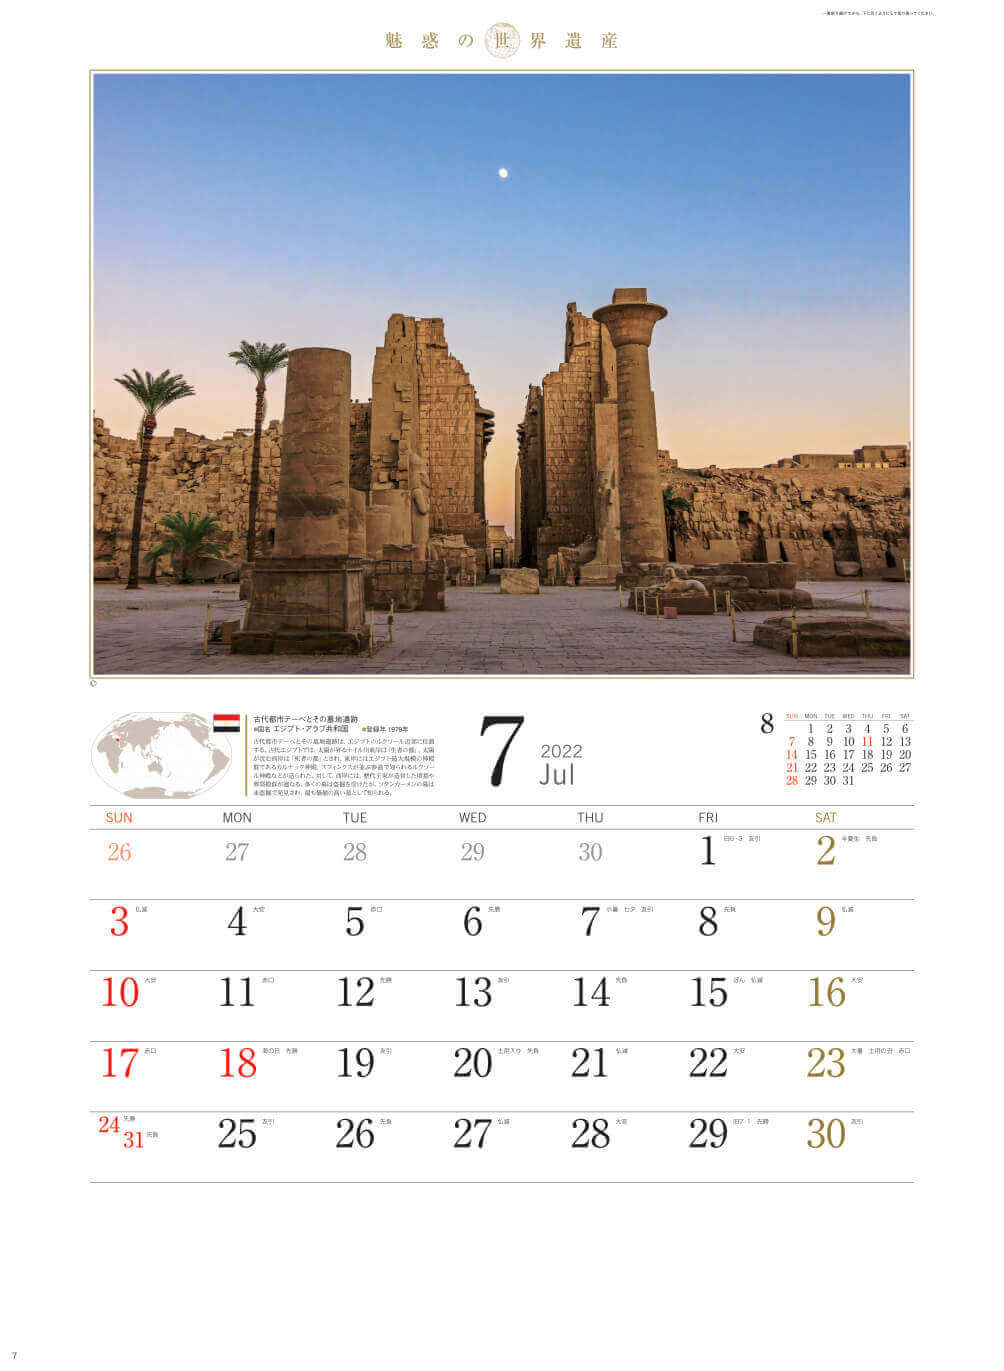 7月 古代都市テーベとその墓地遺 エジプト 魅惑の世界遺産 2022年カレンダーの画像